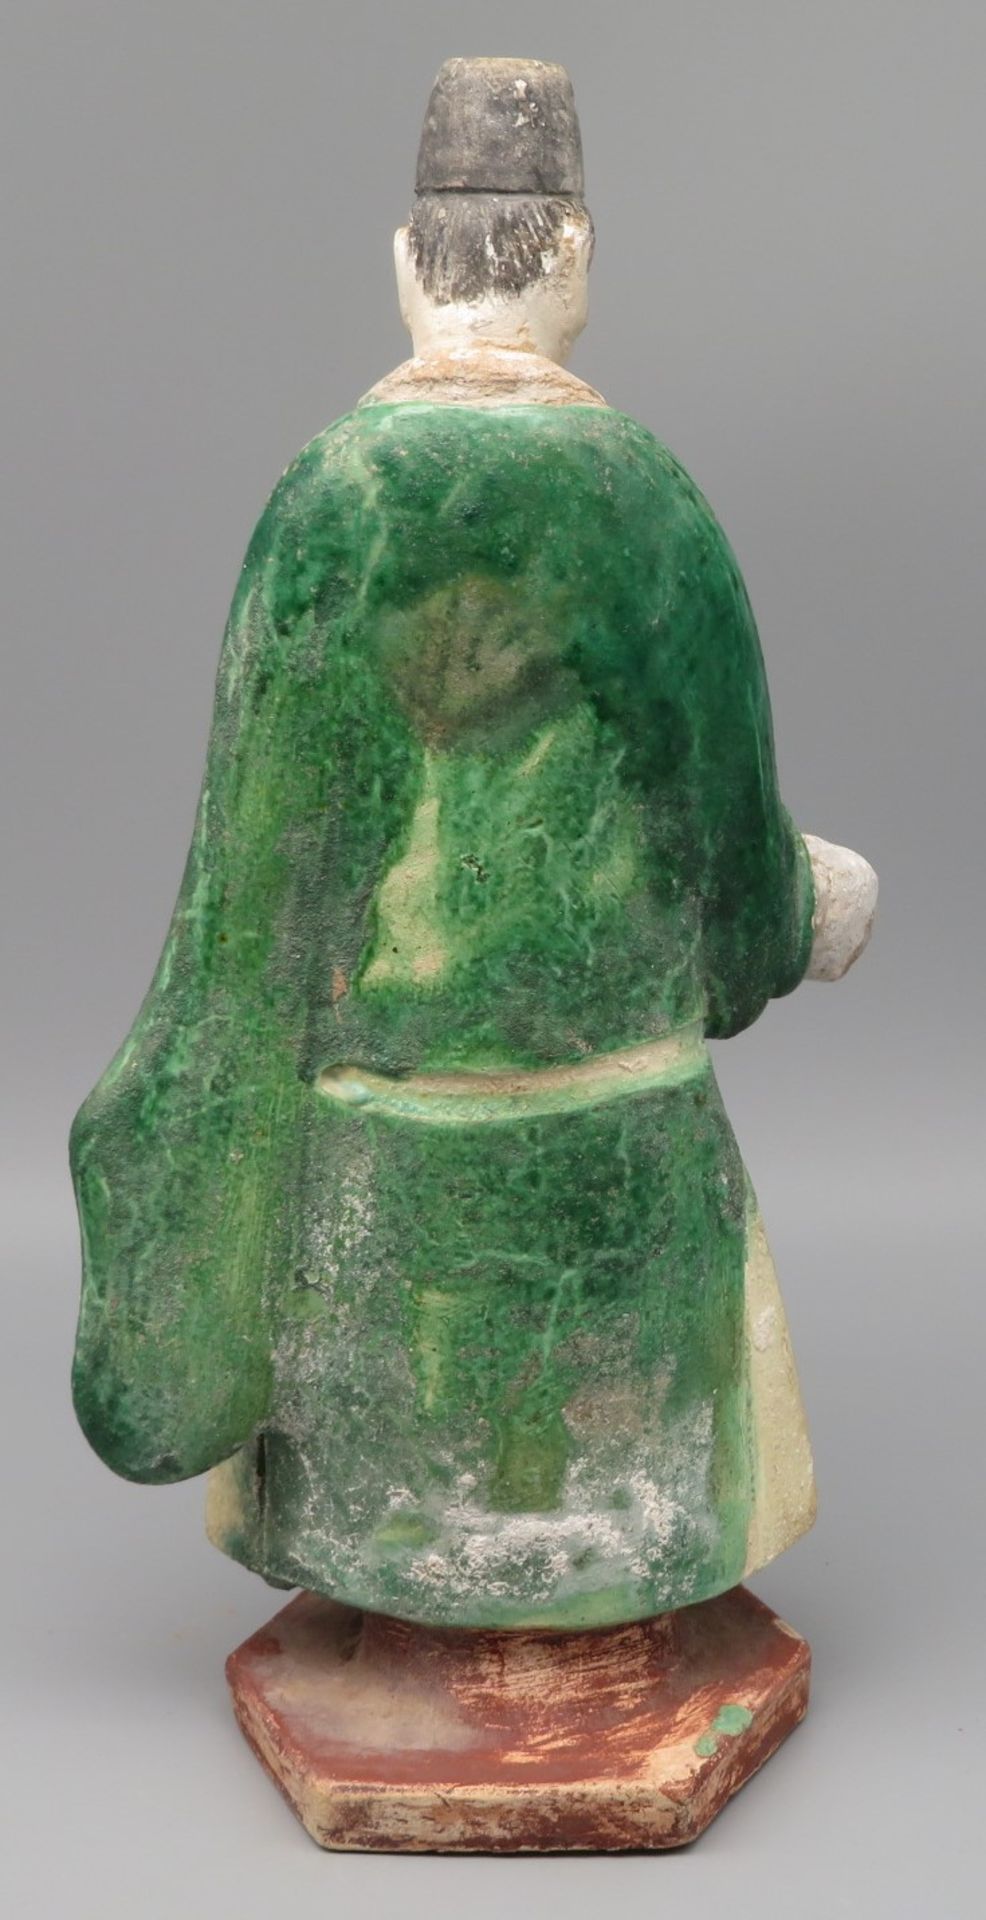 Stehender Gelehrter, China, Ton mit grüner Glasur, h 30 cn, d 14 cm. - Image 2 of 3